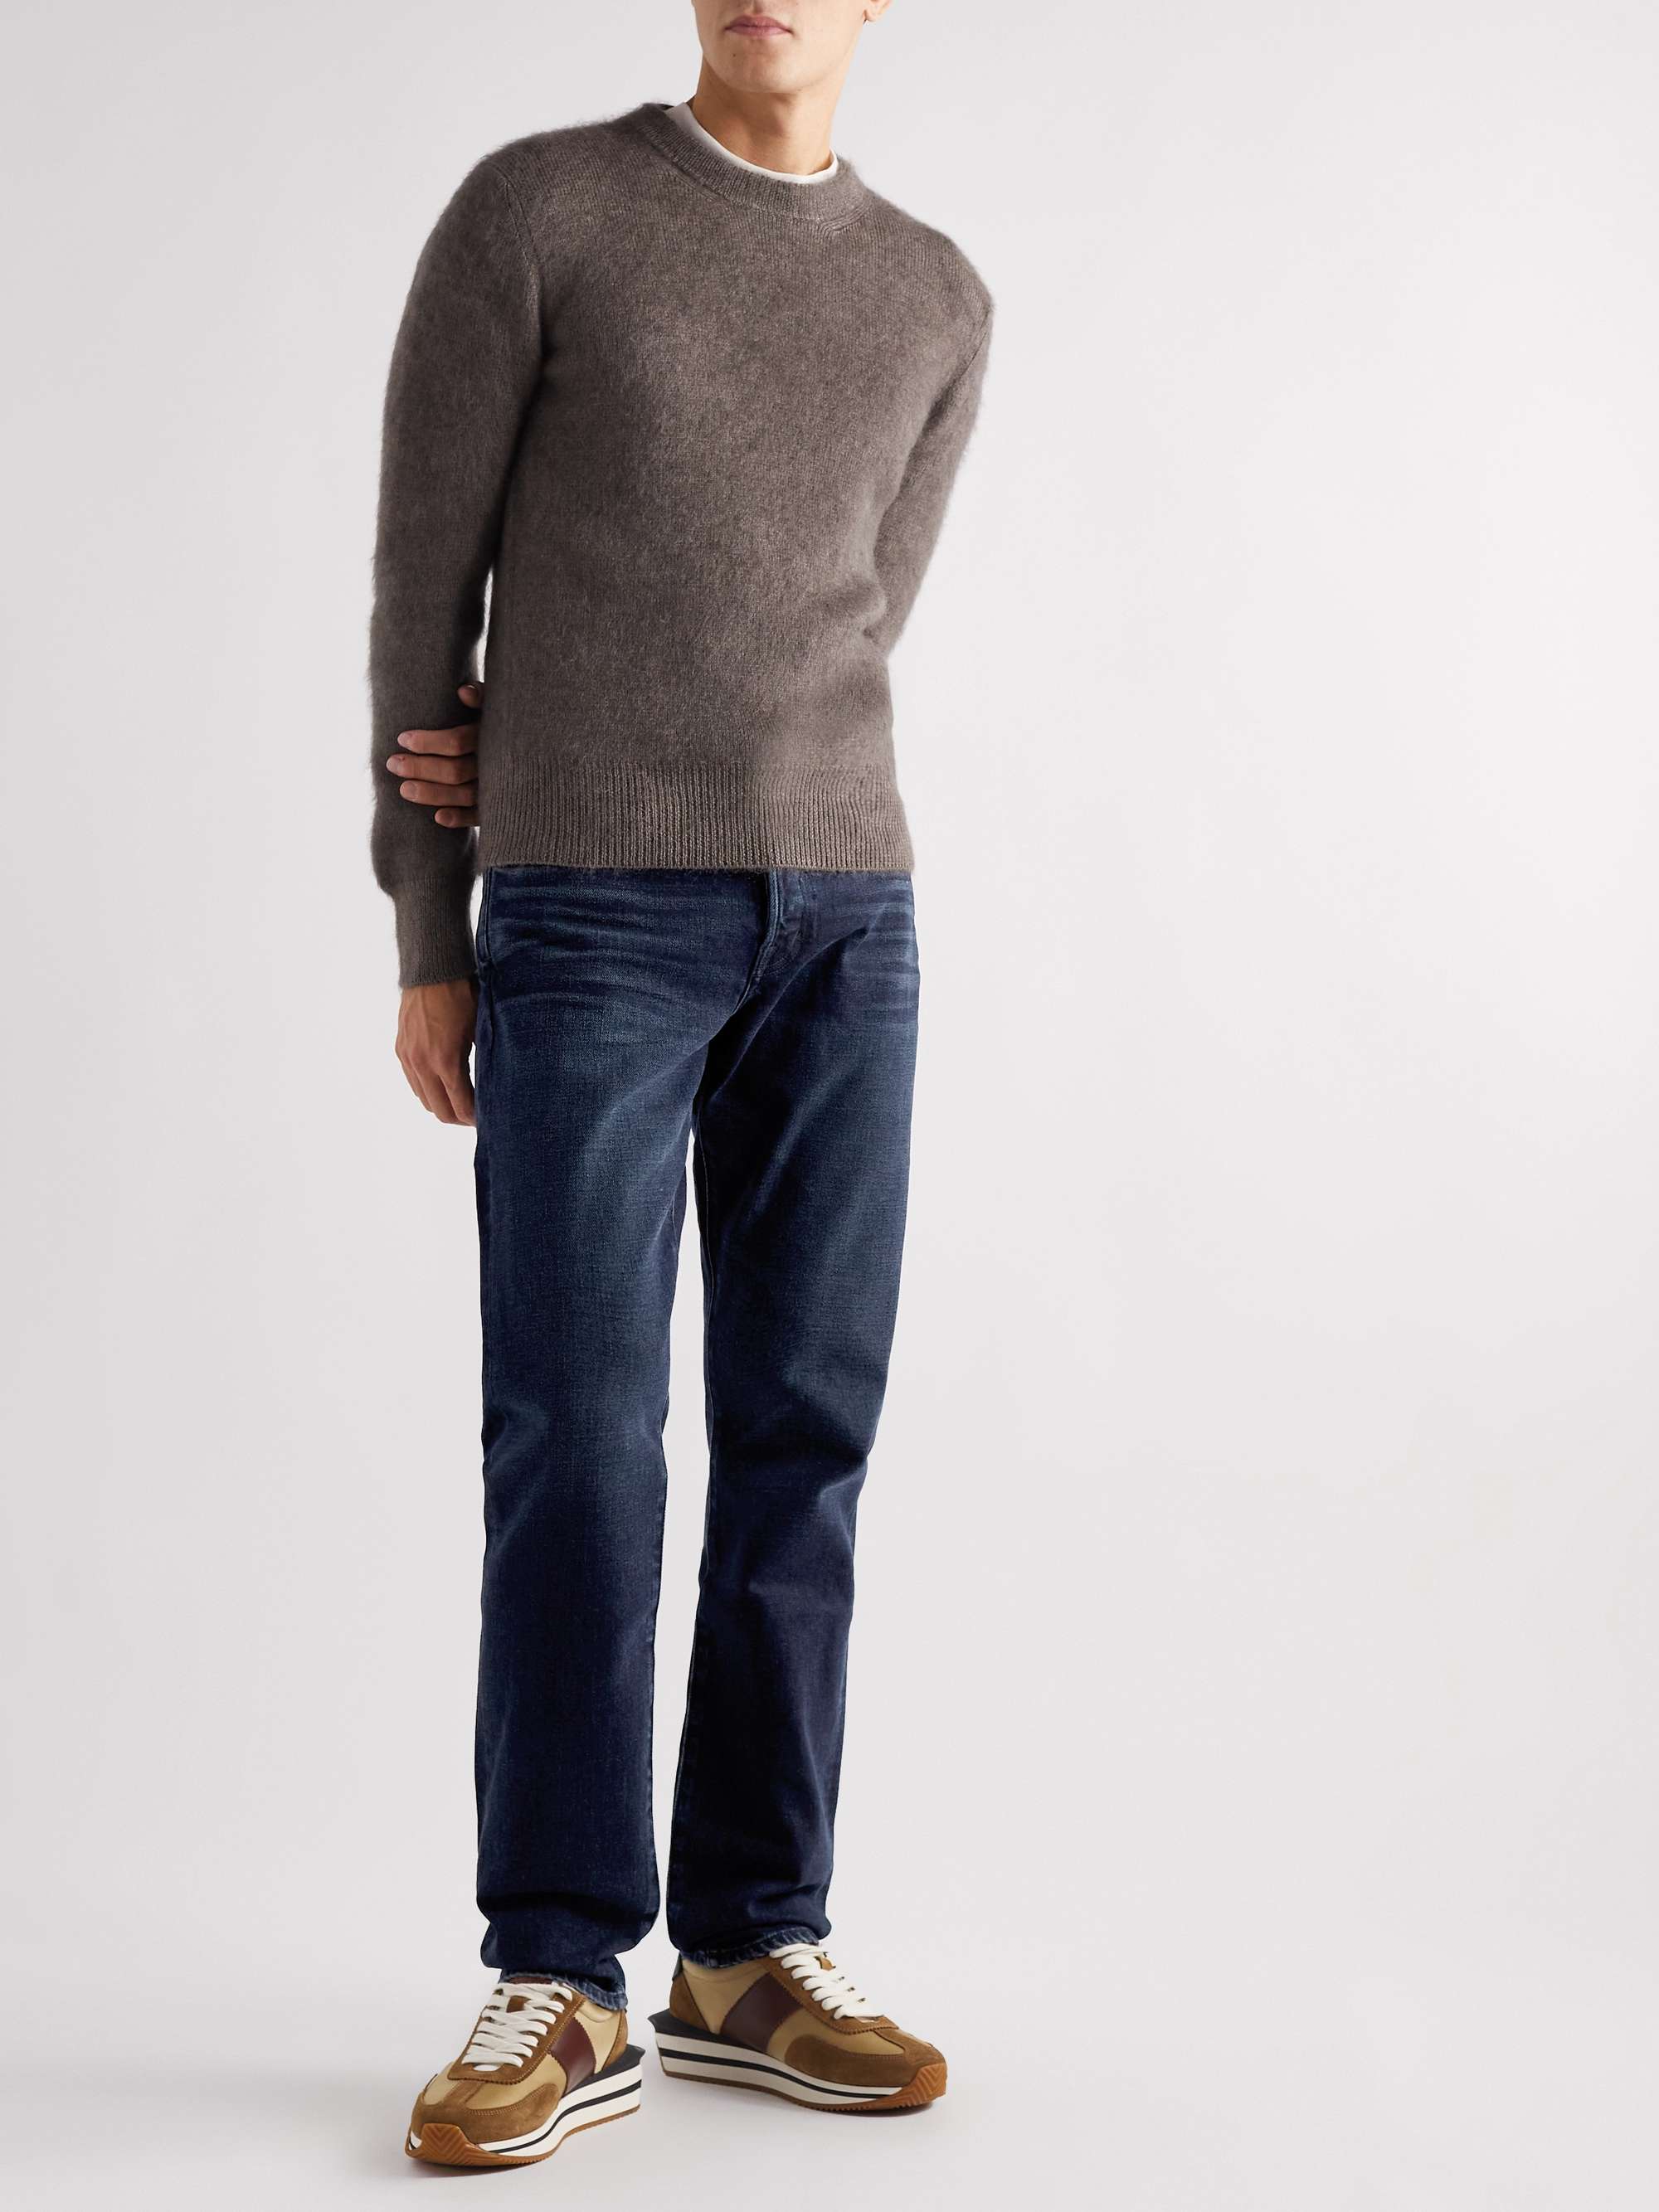 TOM FORD Straight-Leg Garment-Dyed Selvedge Jeans | MR PORTER